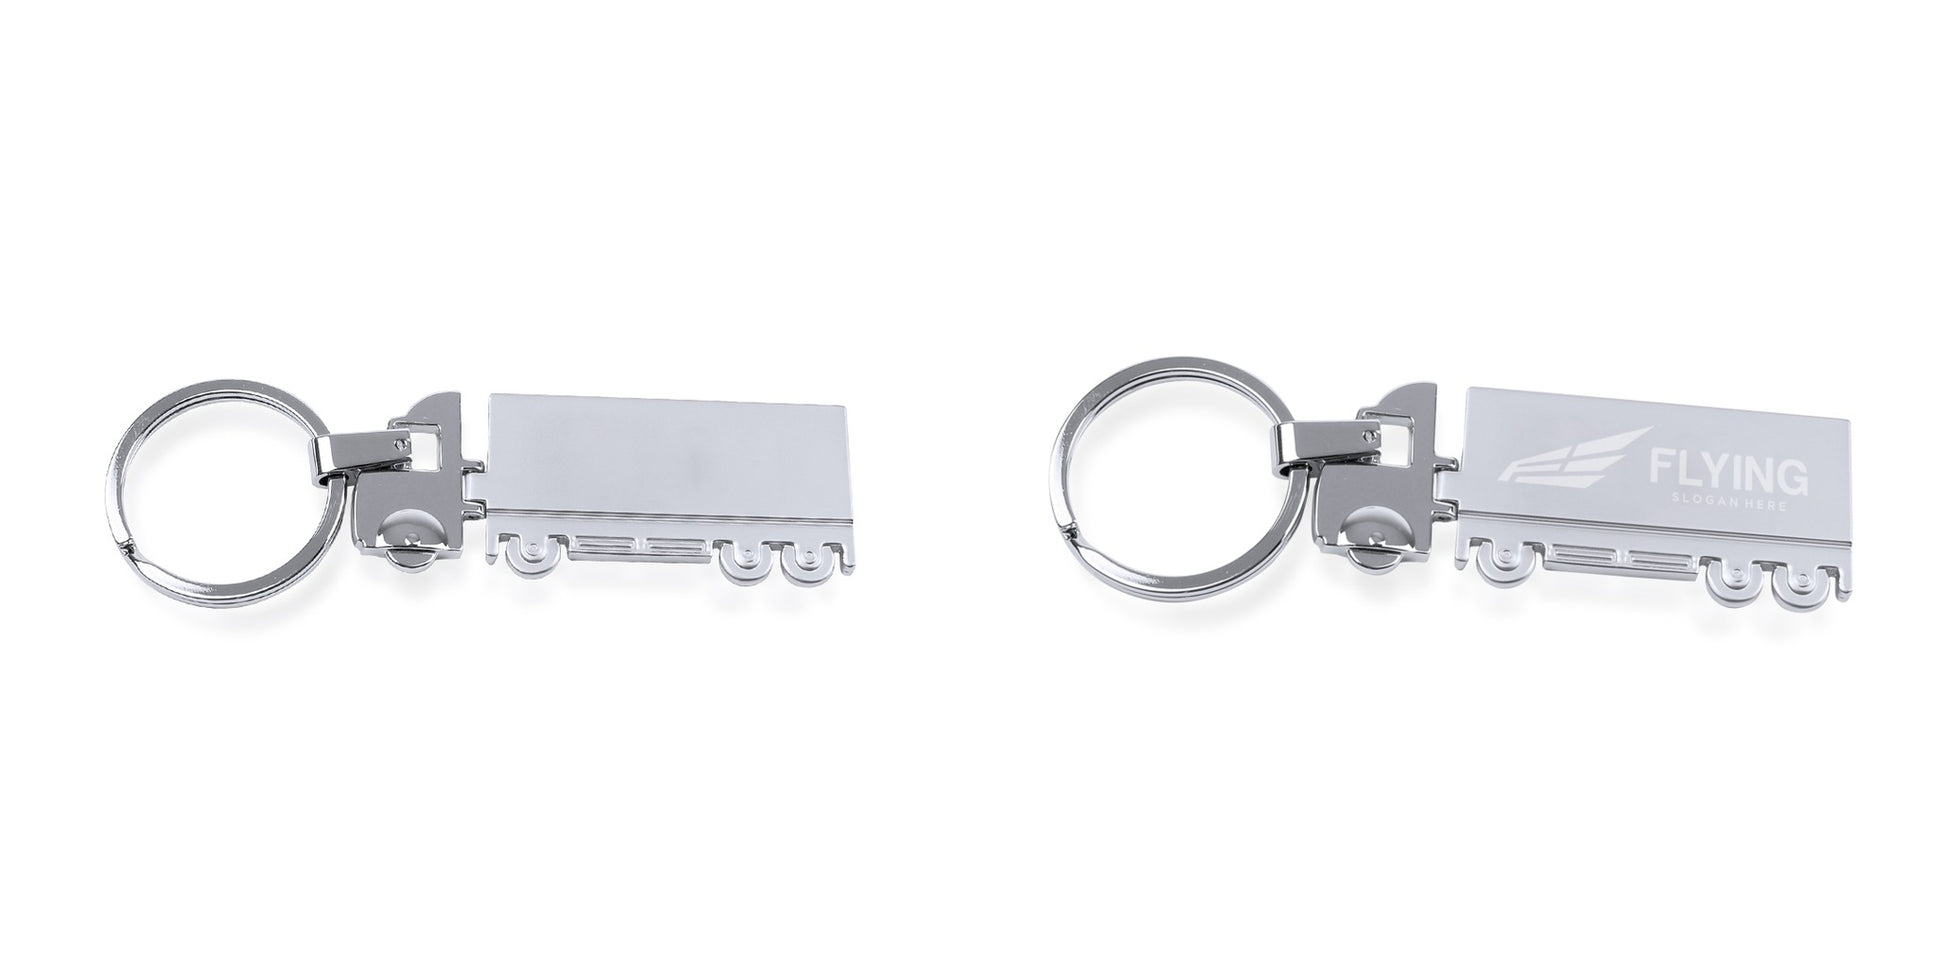 Accessoire porte-clés en métal en forme de camion, personnalisable avec finitions brillante et mate. Style moderne.